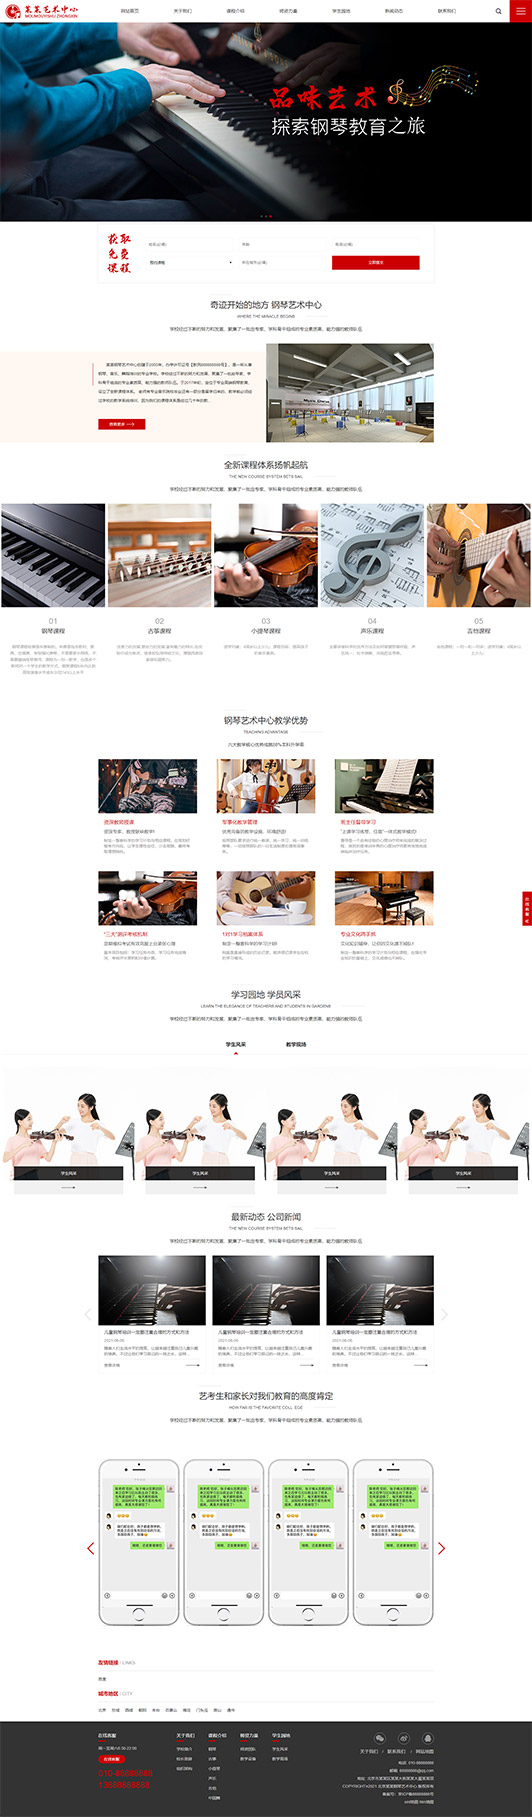 安康钢琴艺术培训公司响应式企业网站